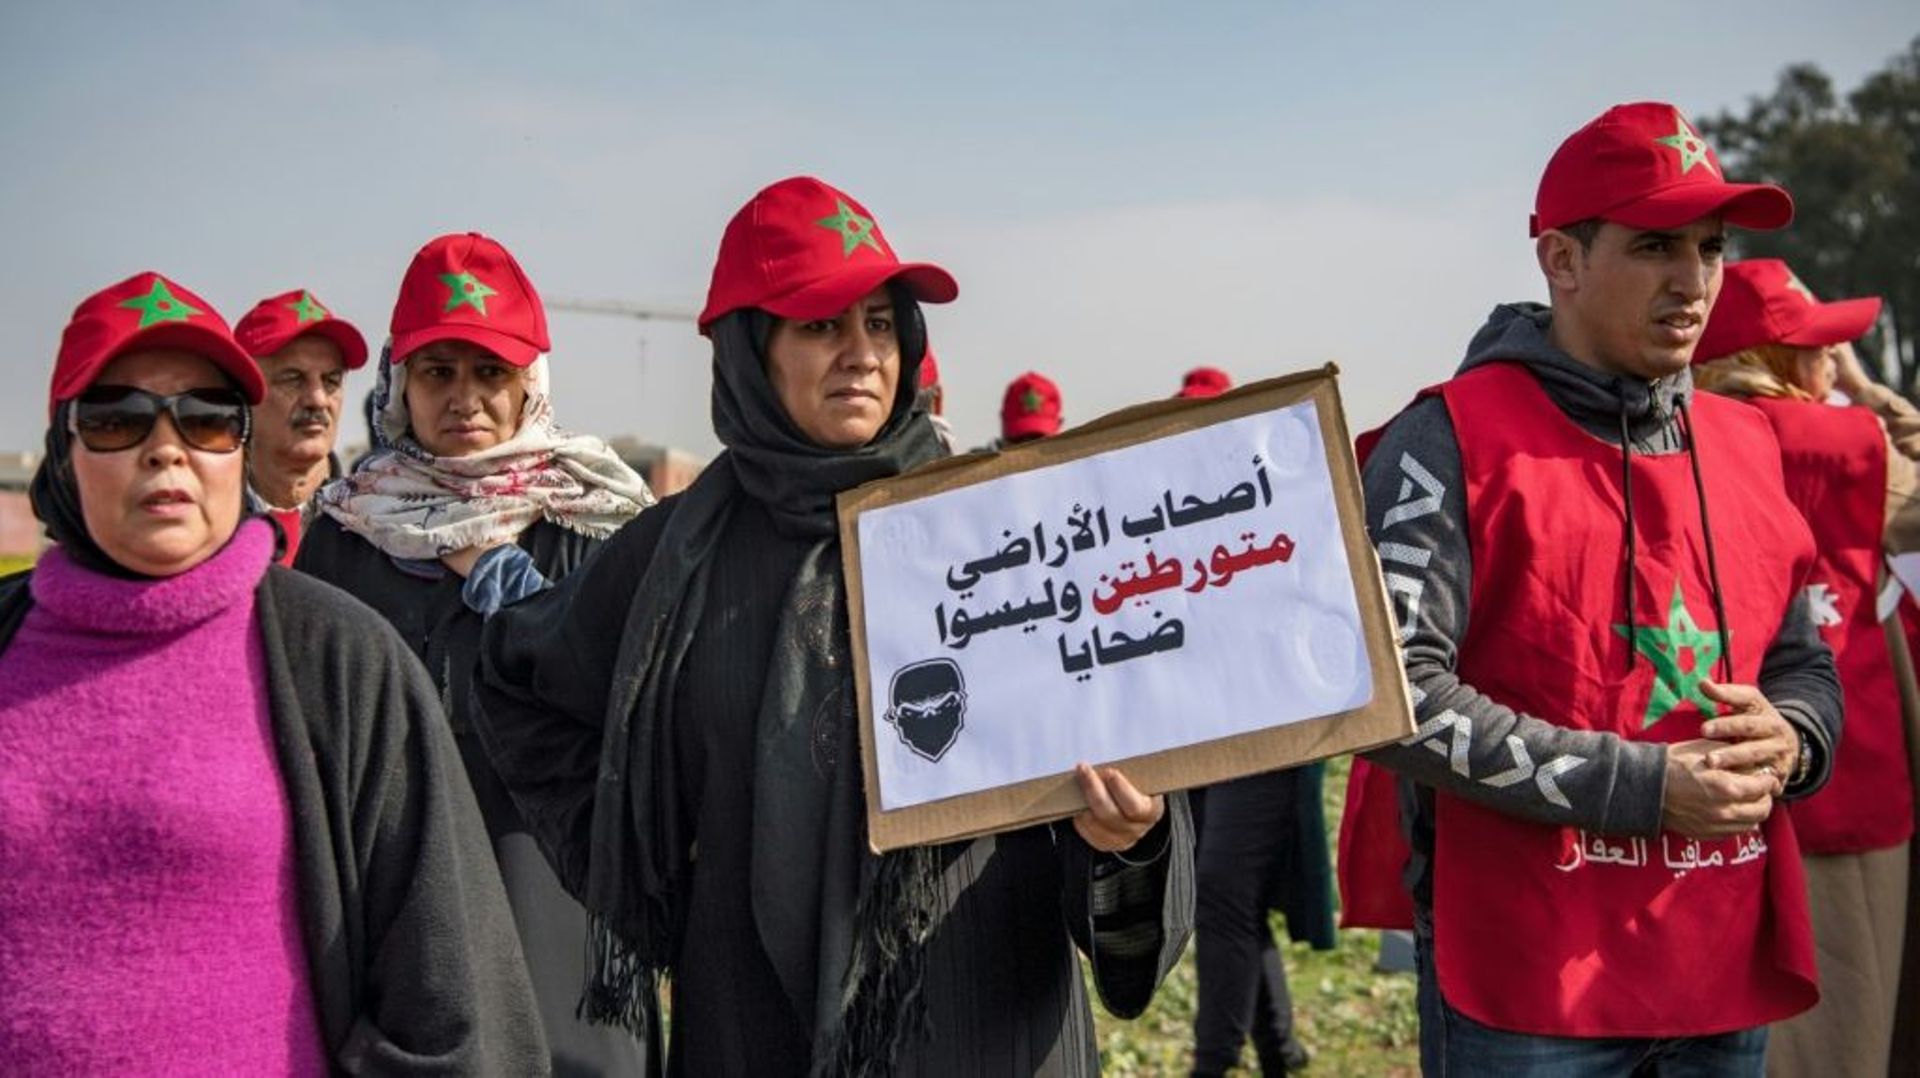 Des personnes manifestent sur un terrain vague supposé abrité des immeubles d'habitation, contre le groupe immobilier "Bab Darna" à l'origine d'une vaste arnaque immobilière, le 15 février 2020 à Casablanca